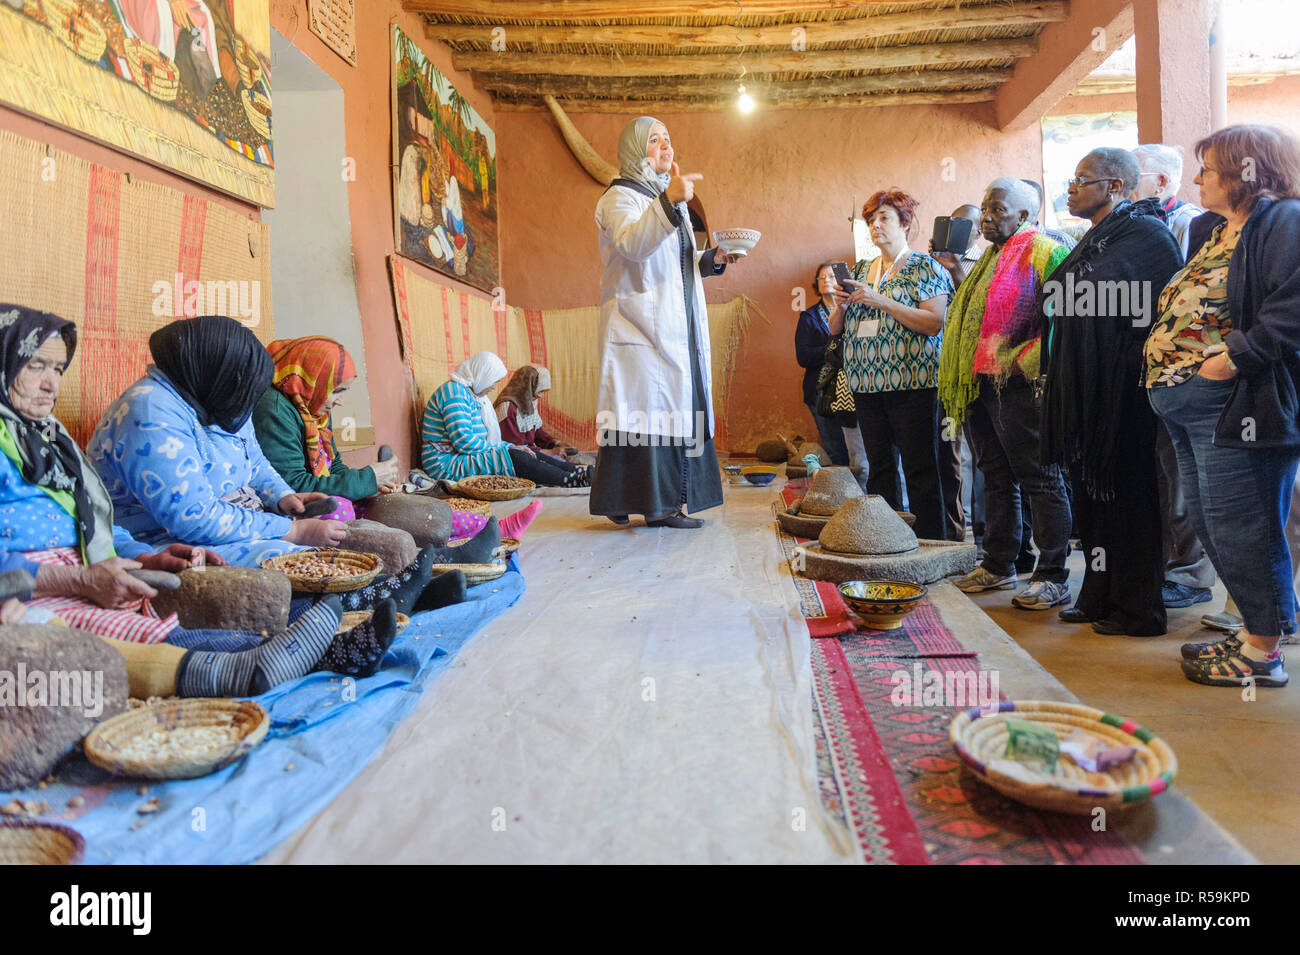 01-03-15, Marrakech, Marocco. Una dimostrazione per i turisti per la fabbricazione di olio di Argan nel sub-Atlas regione berbera. Foto: © Simon Grosset Foto Stock